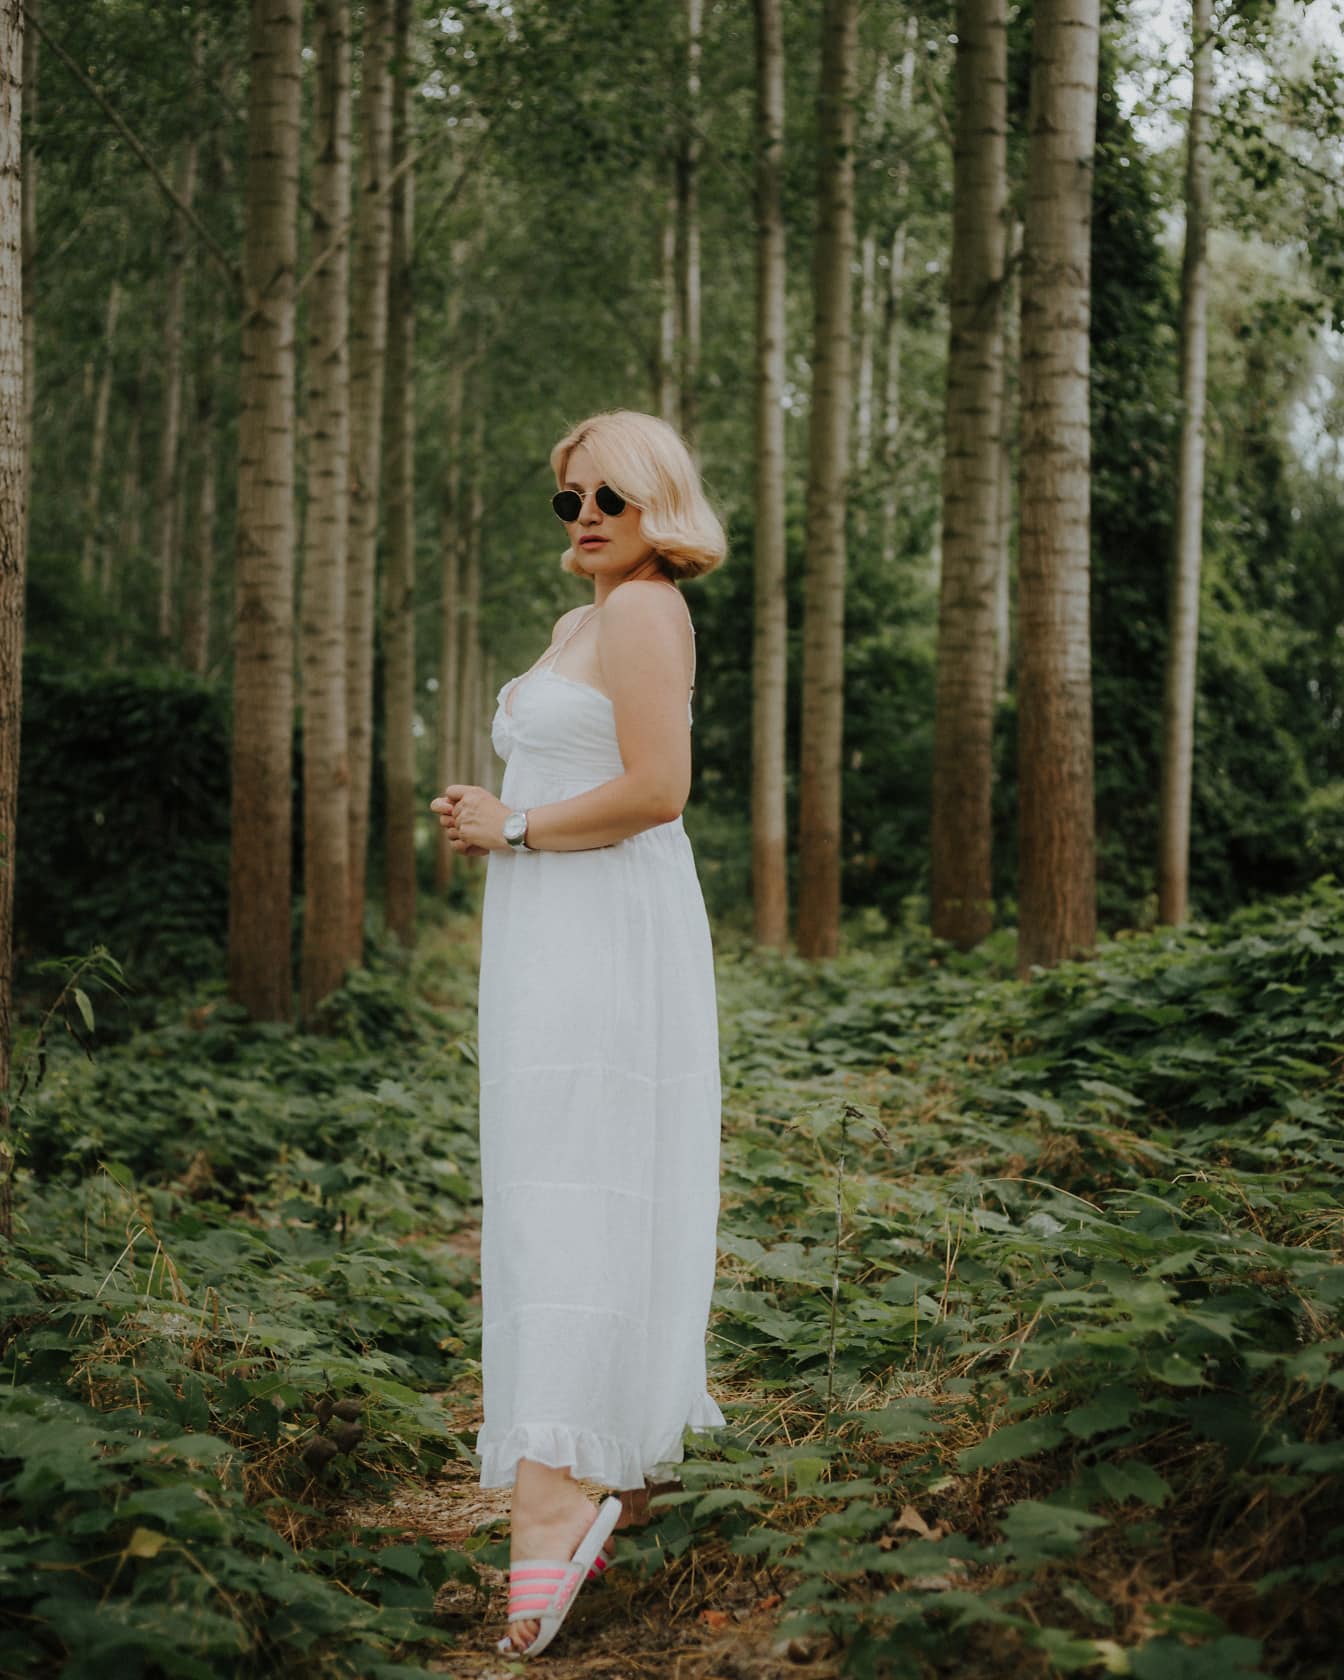 Cô gái tóc vàng lộng lẫy trong chiếc váy trắng trong rừng xanh